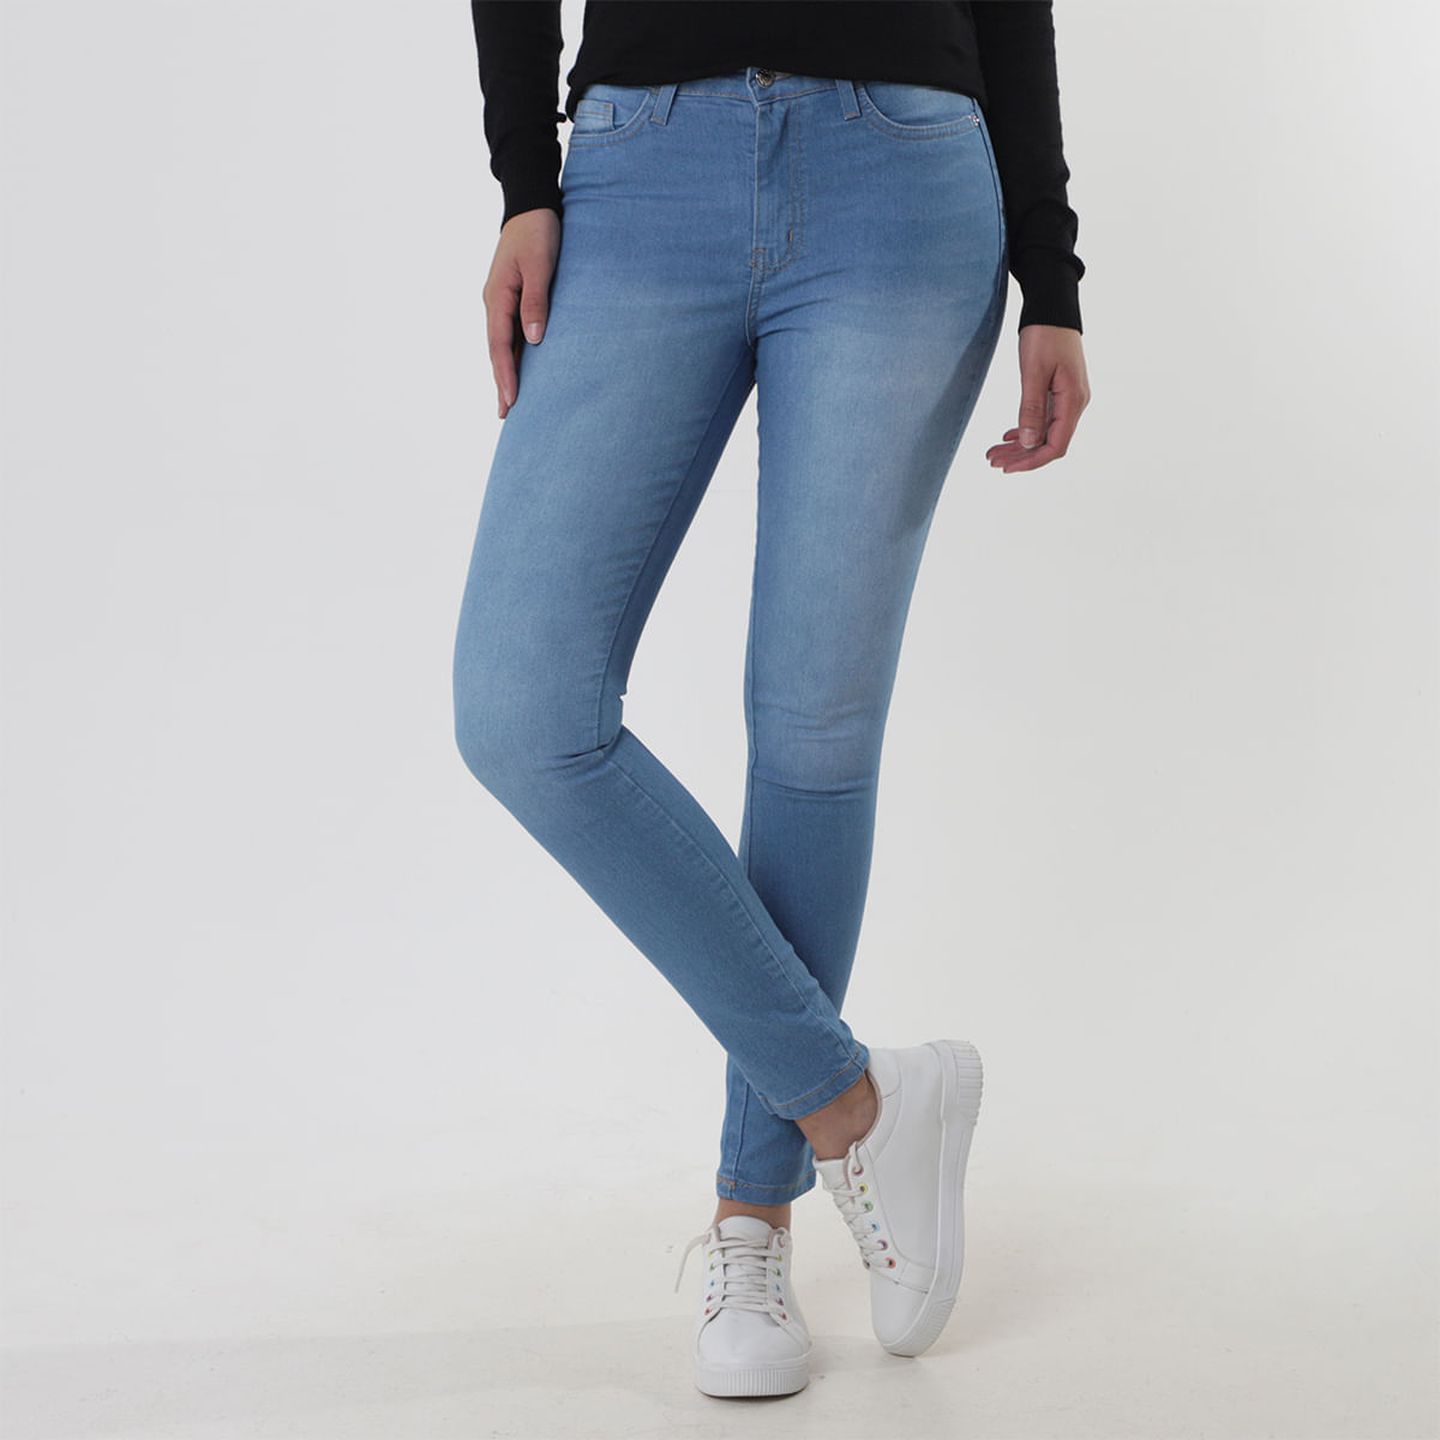 Calça jeans masculina: veja como usar essa peça versátil e atemporal –  Homem S/A